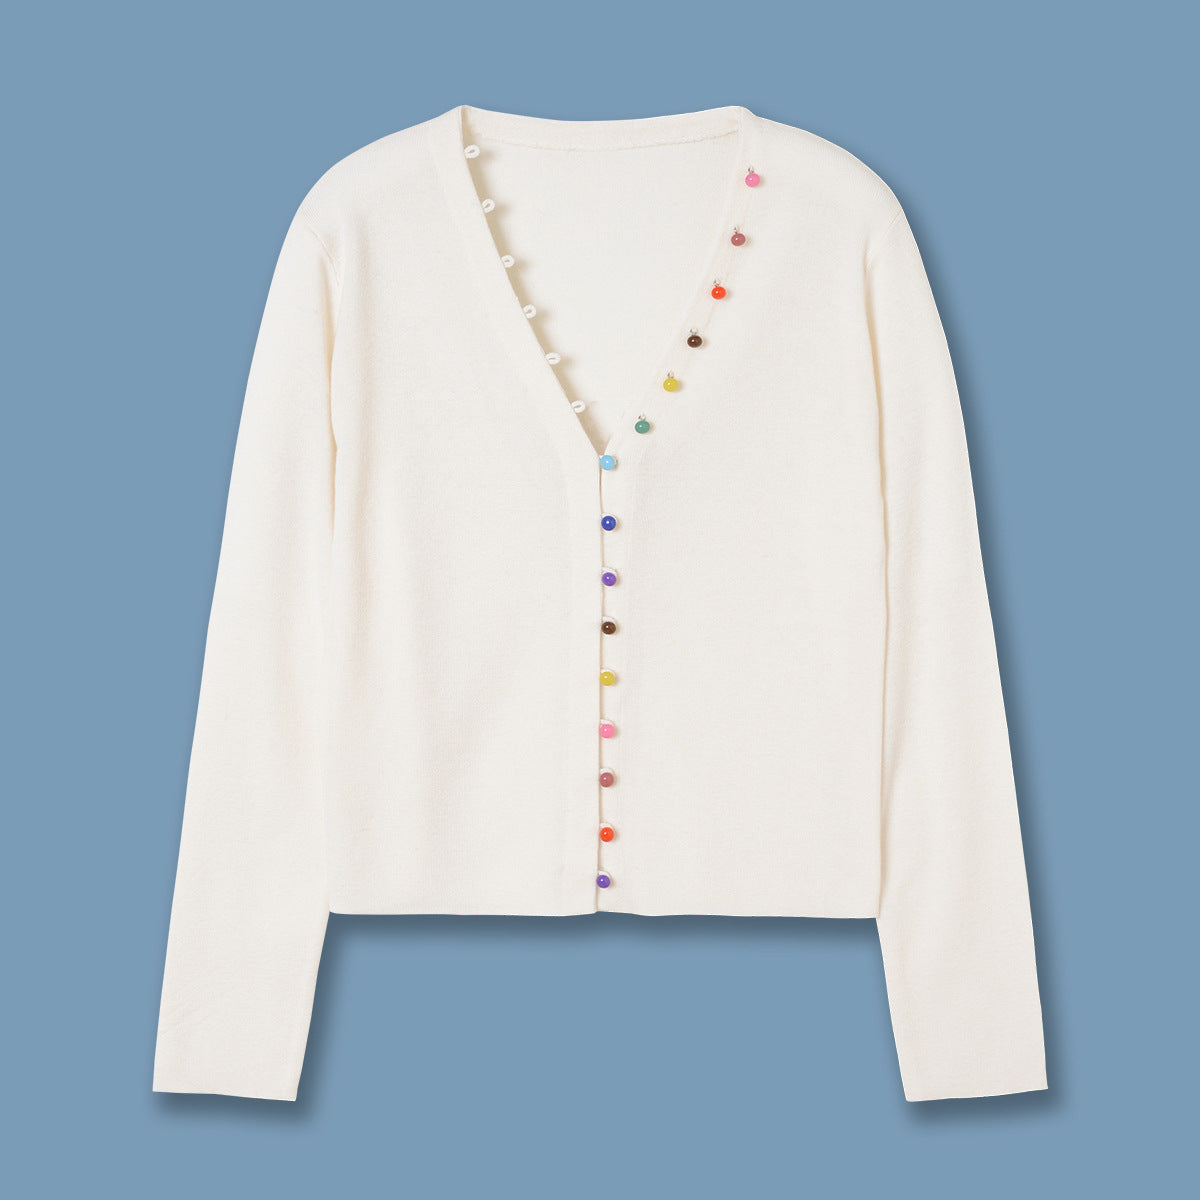 Strickjacke aus weißer Wolle mit V-Ausschnitt, 24 Jahre Frühling, neuer Strickmantel mit Regenbogenschnalle, eleganter Pullover